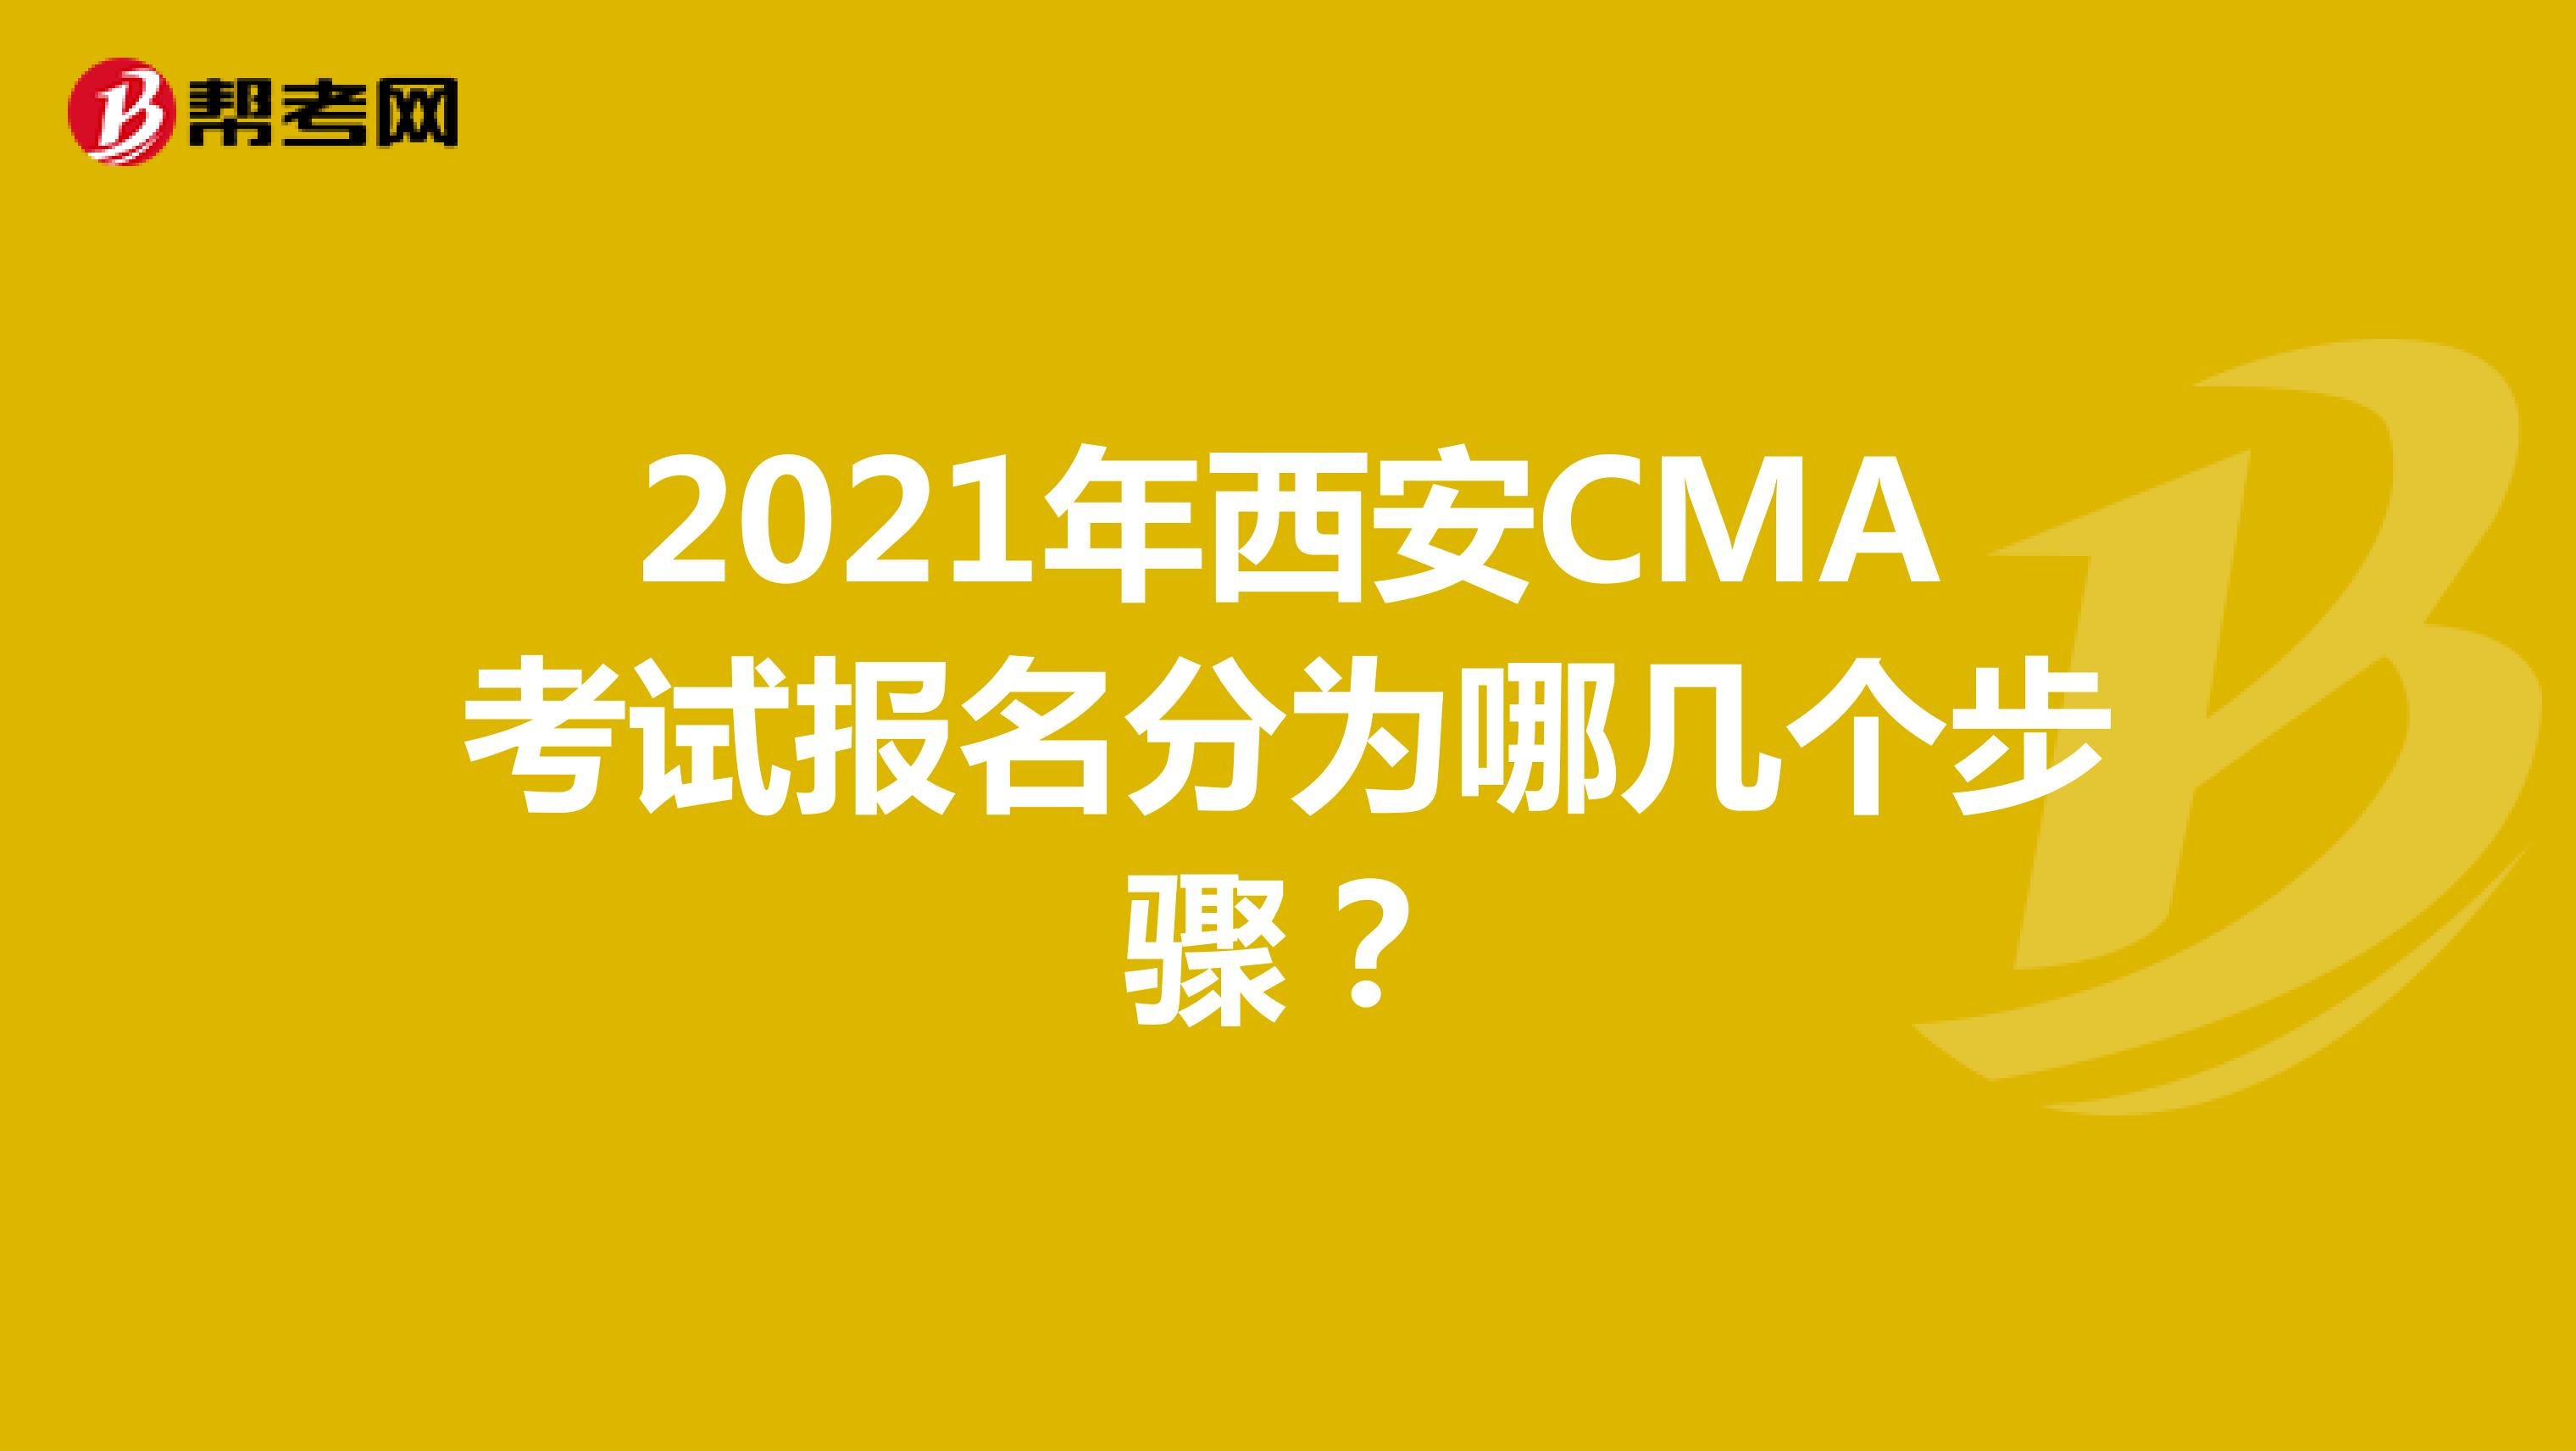 2021年西安CMA考试报名分为哪几个步骤？